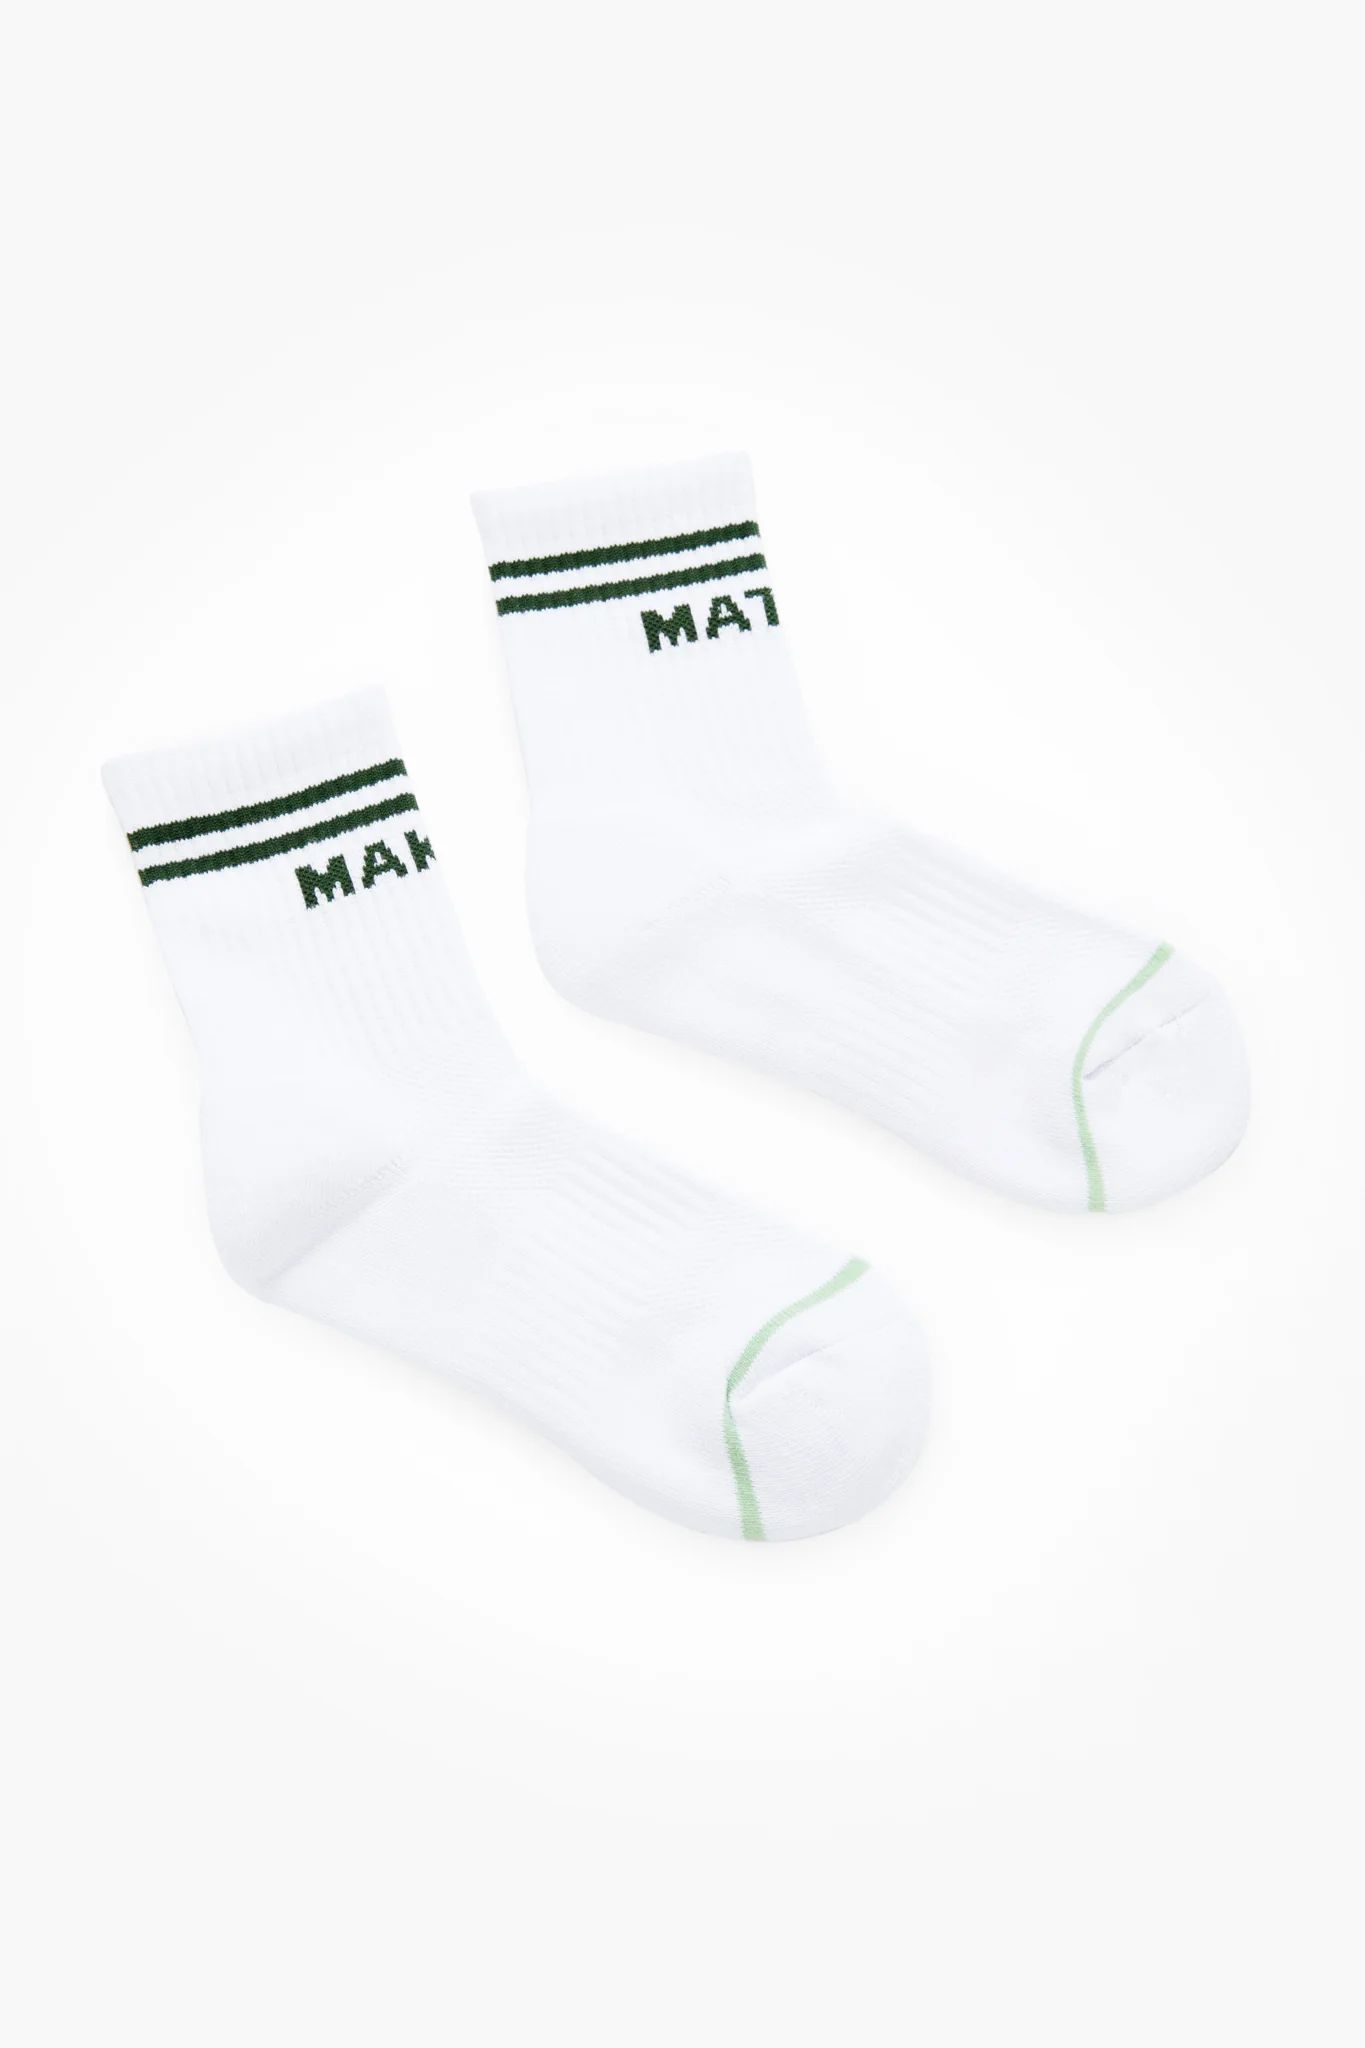 Match Maker Socks | Tuckernuck (US)